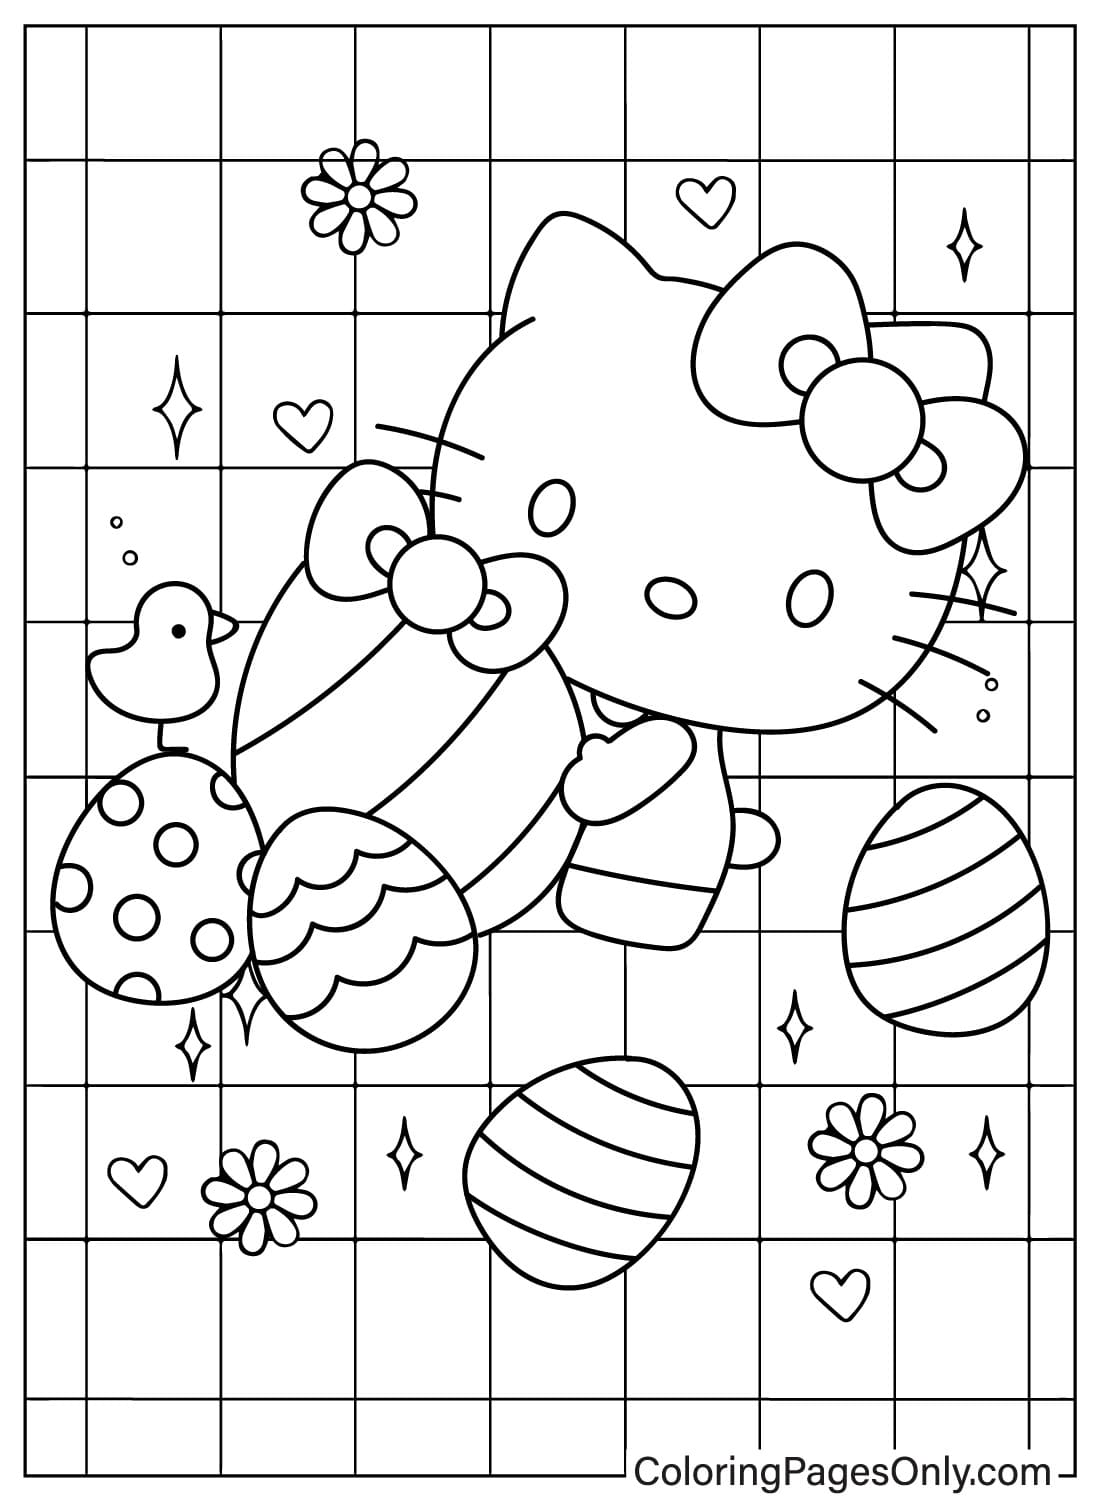 Página para colorear de Hello Kitty de Pascua gratis de dibujos animados de Pascua